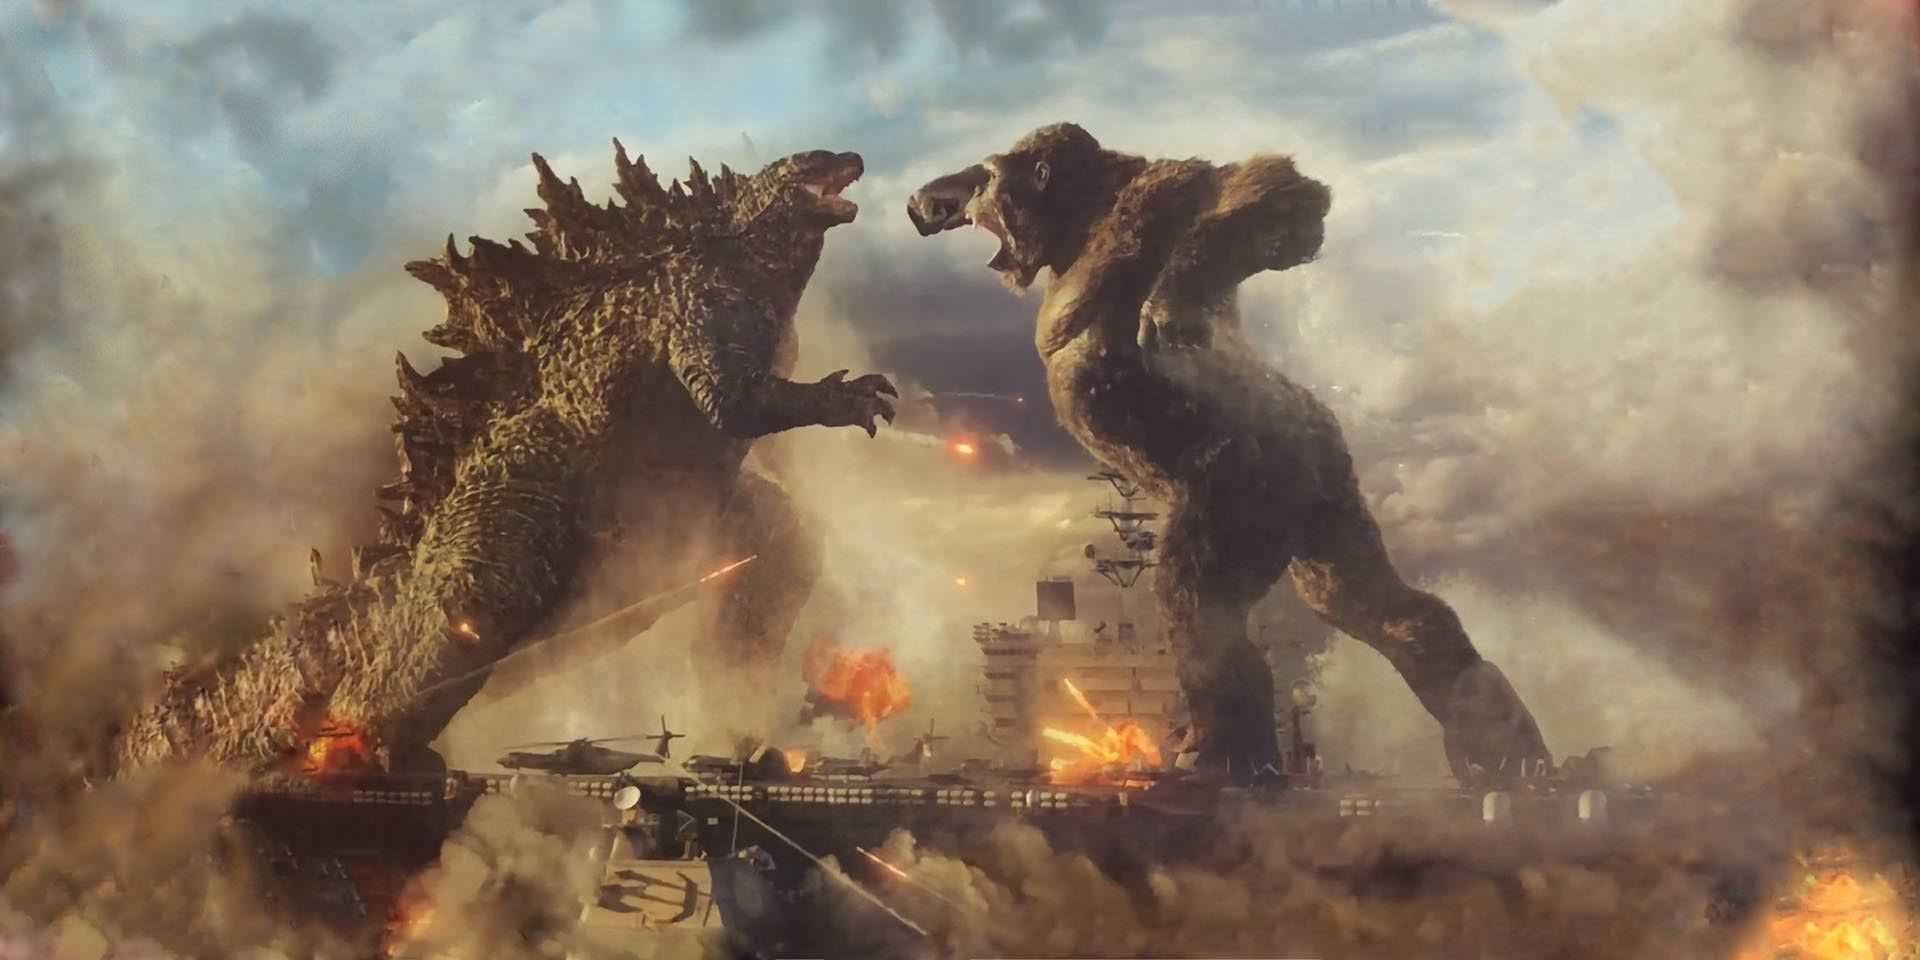 نبرد گودزیلا و کینگ کونگ در فیلم Godzila vs King Kong